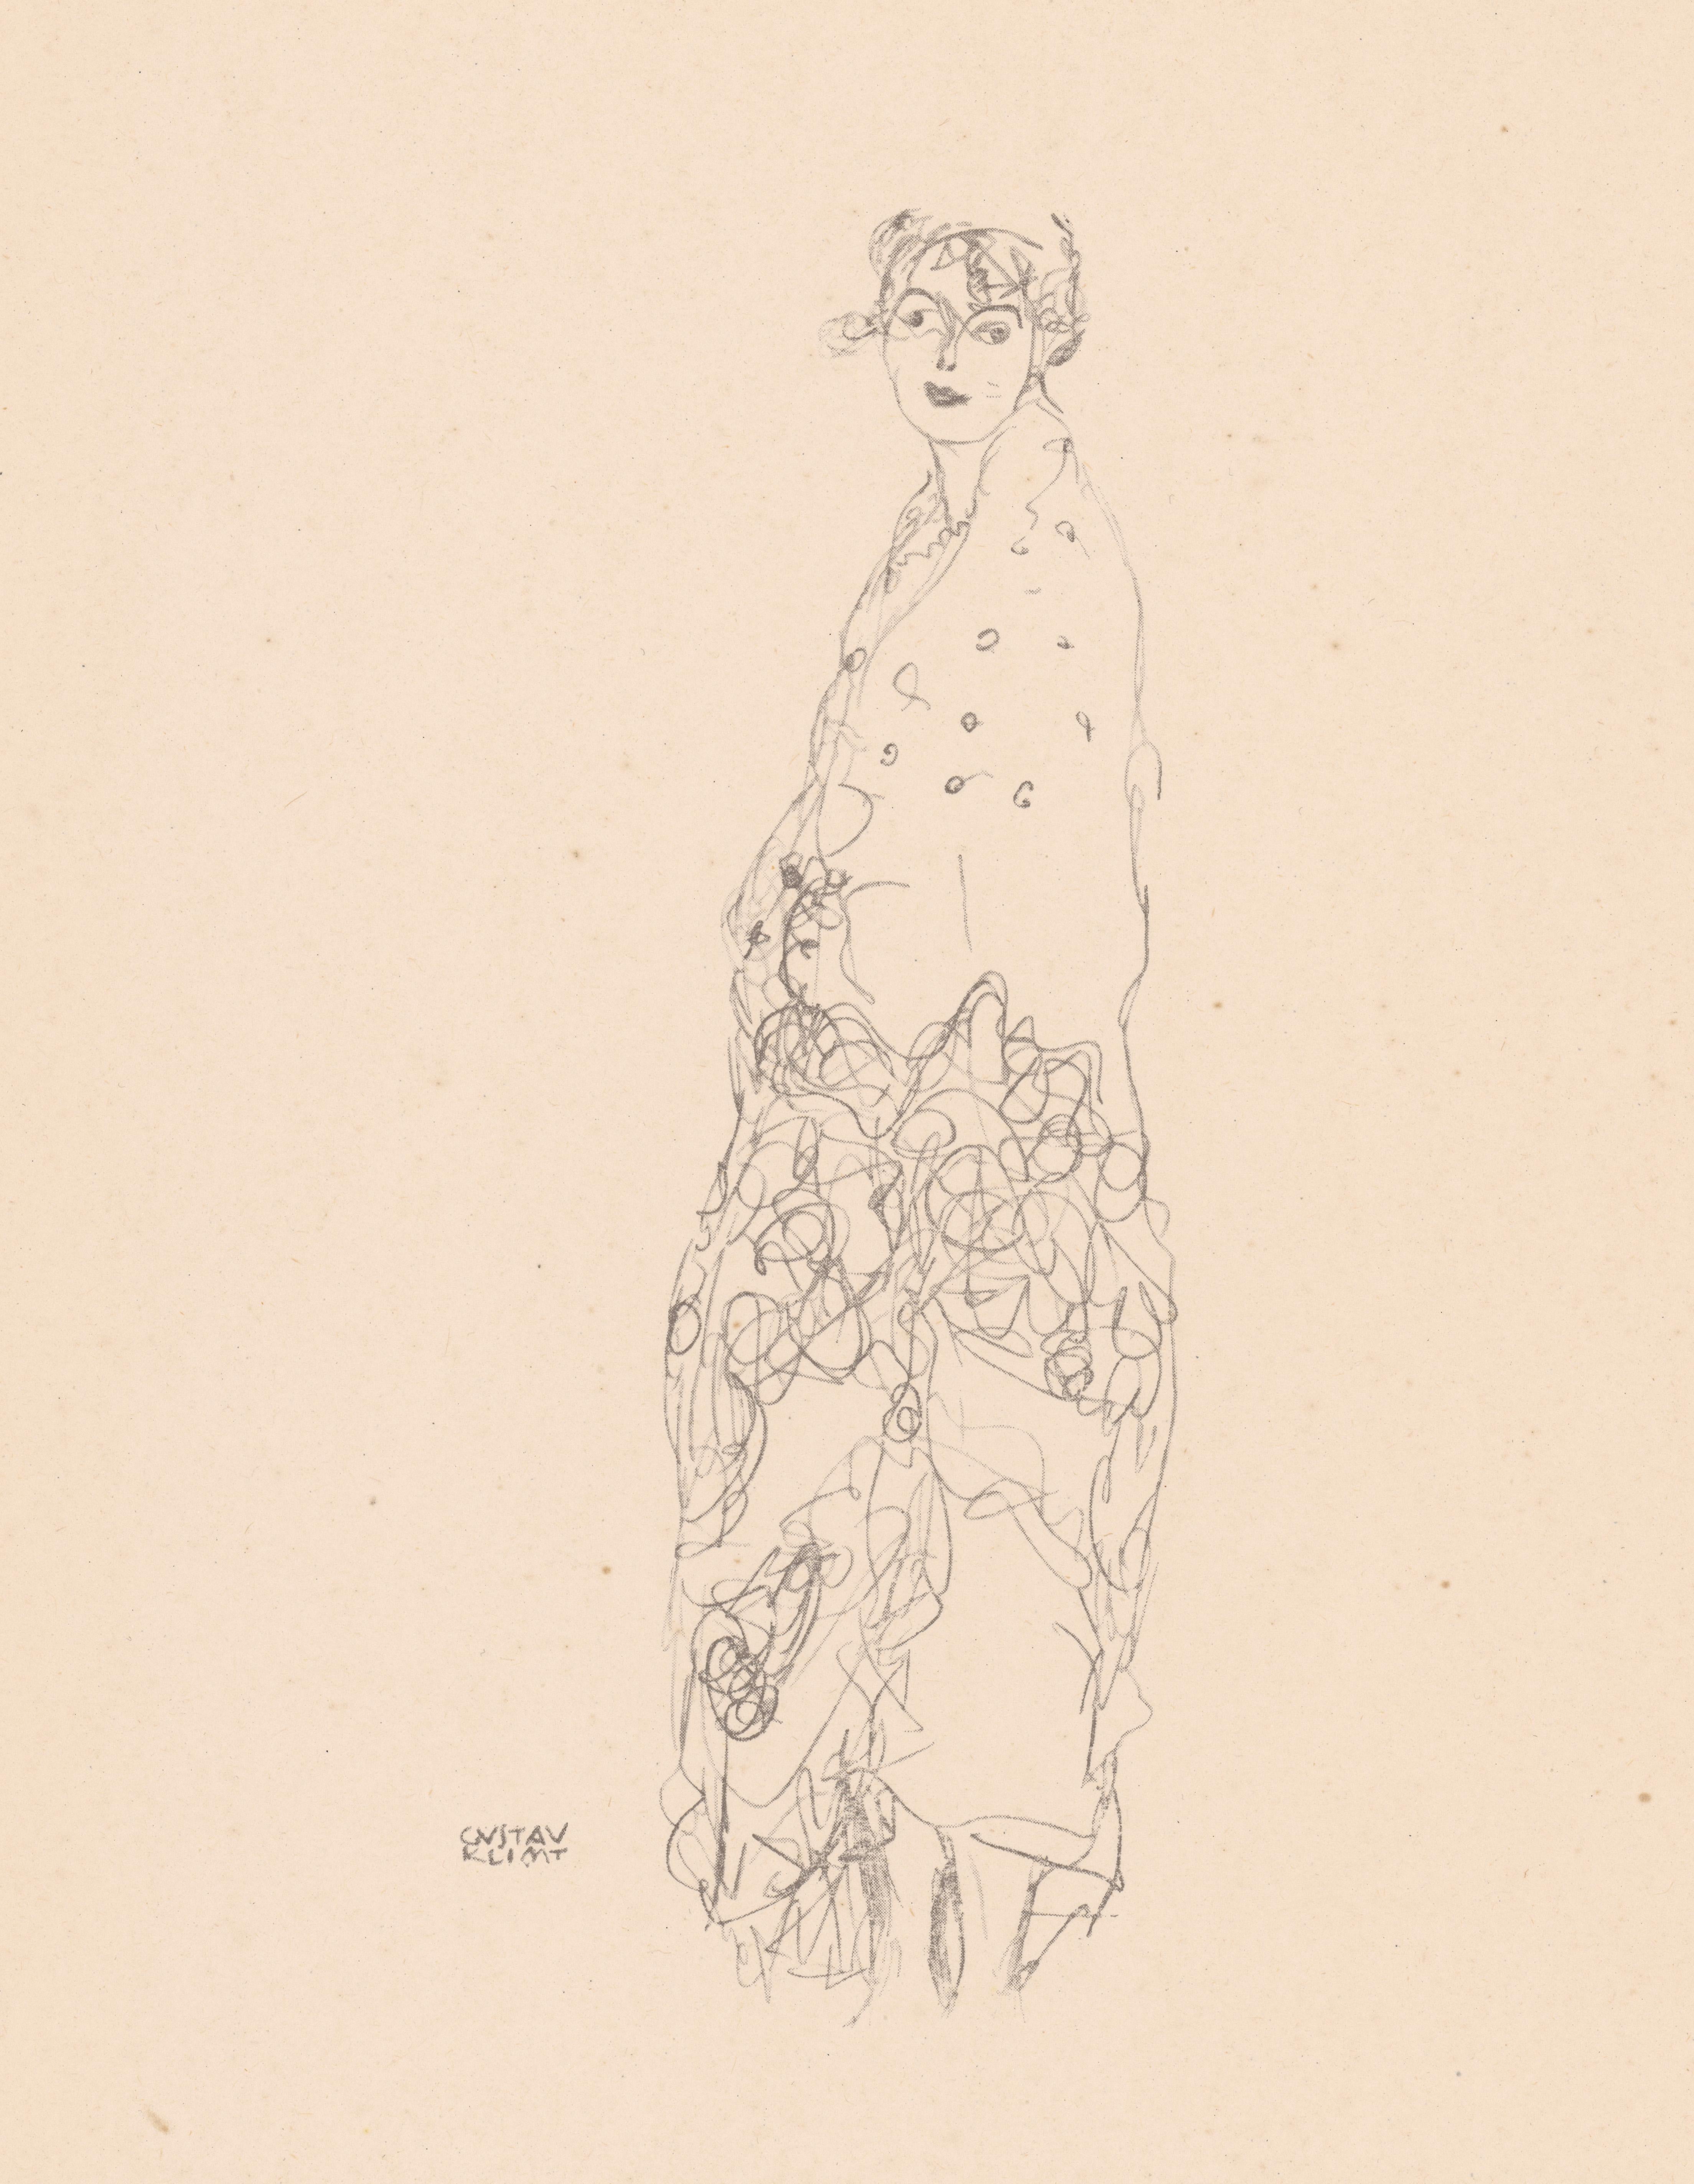 Woman in dress, Gustav Klimt Handzeichnungen (Sketch), Thyrsos Verlag, 1922 - Print by (after) Gustav Klimt